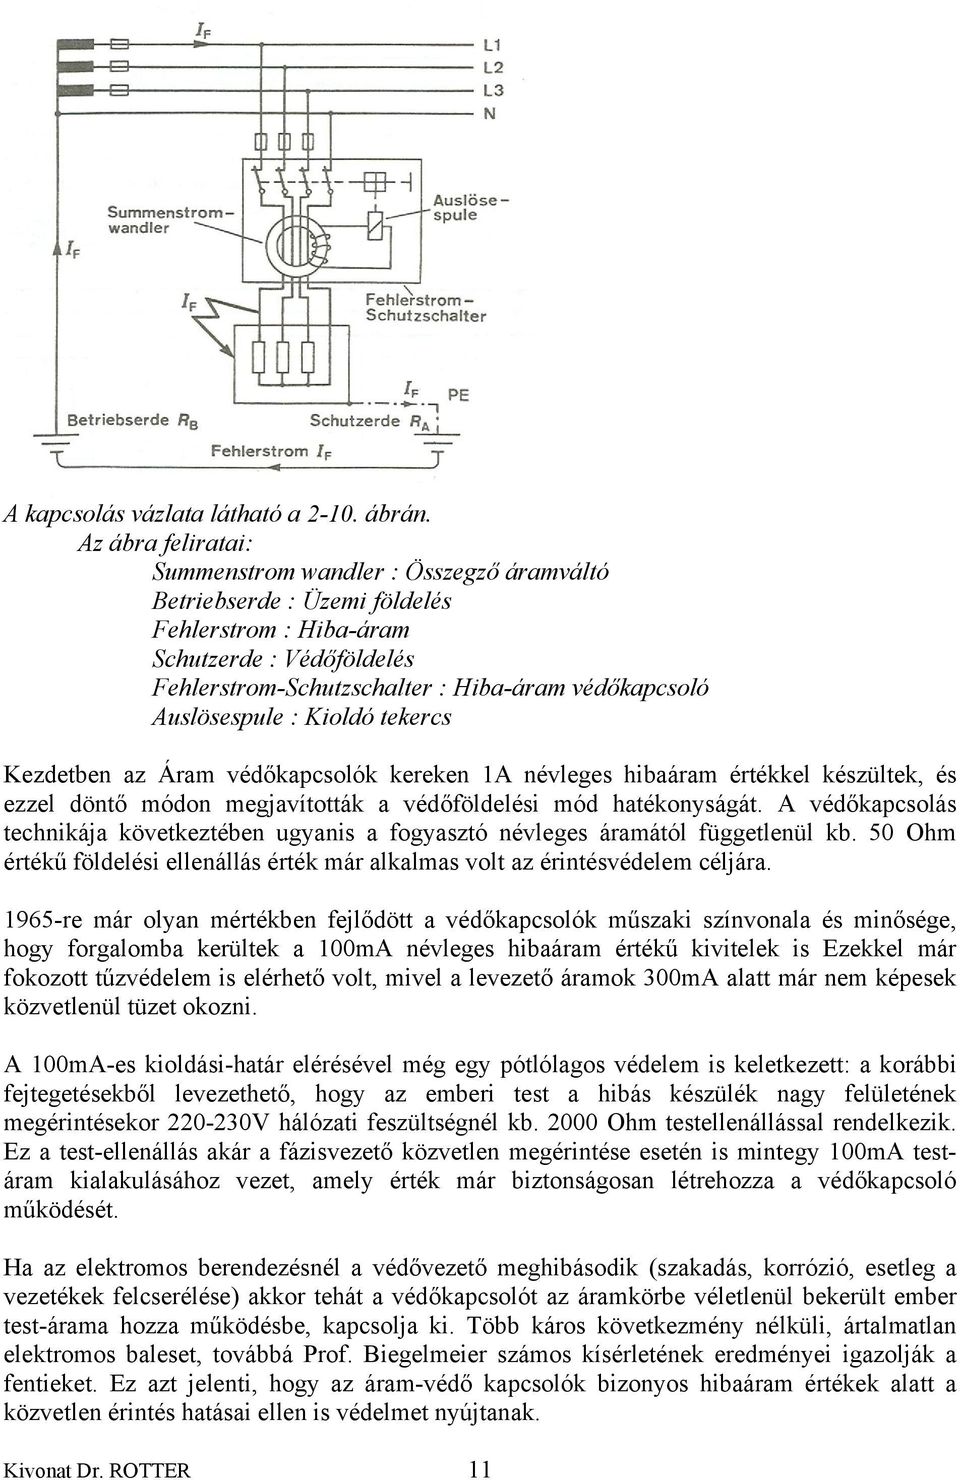 Kivonat Dr. Klaus ROTTER 1990 évi kiadású ELEKTRO-SCHUTZ című munkájából  (kissé korszerűsítve a lektor által) - PDF Free Download